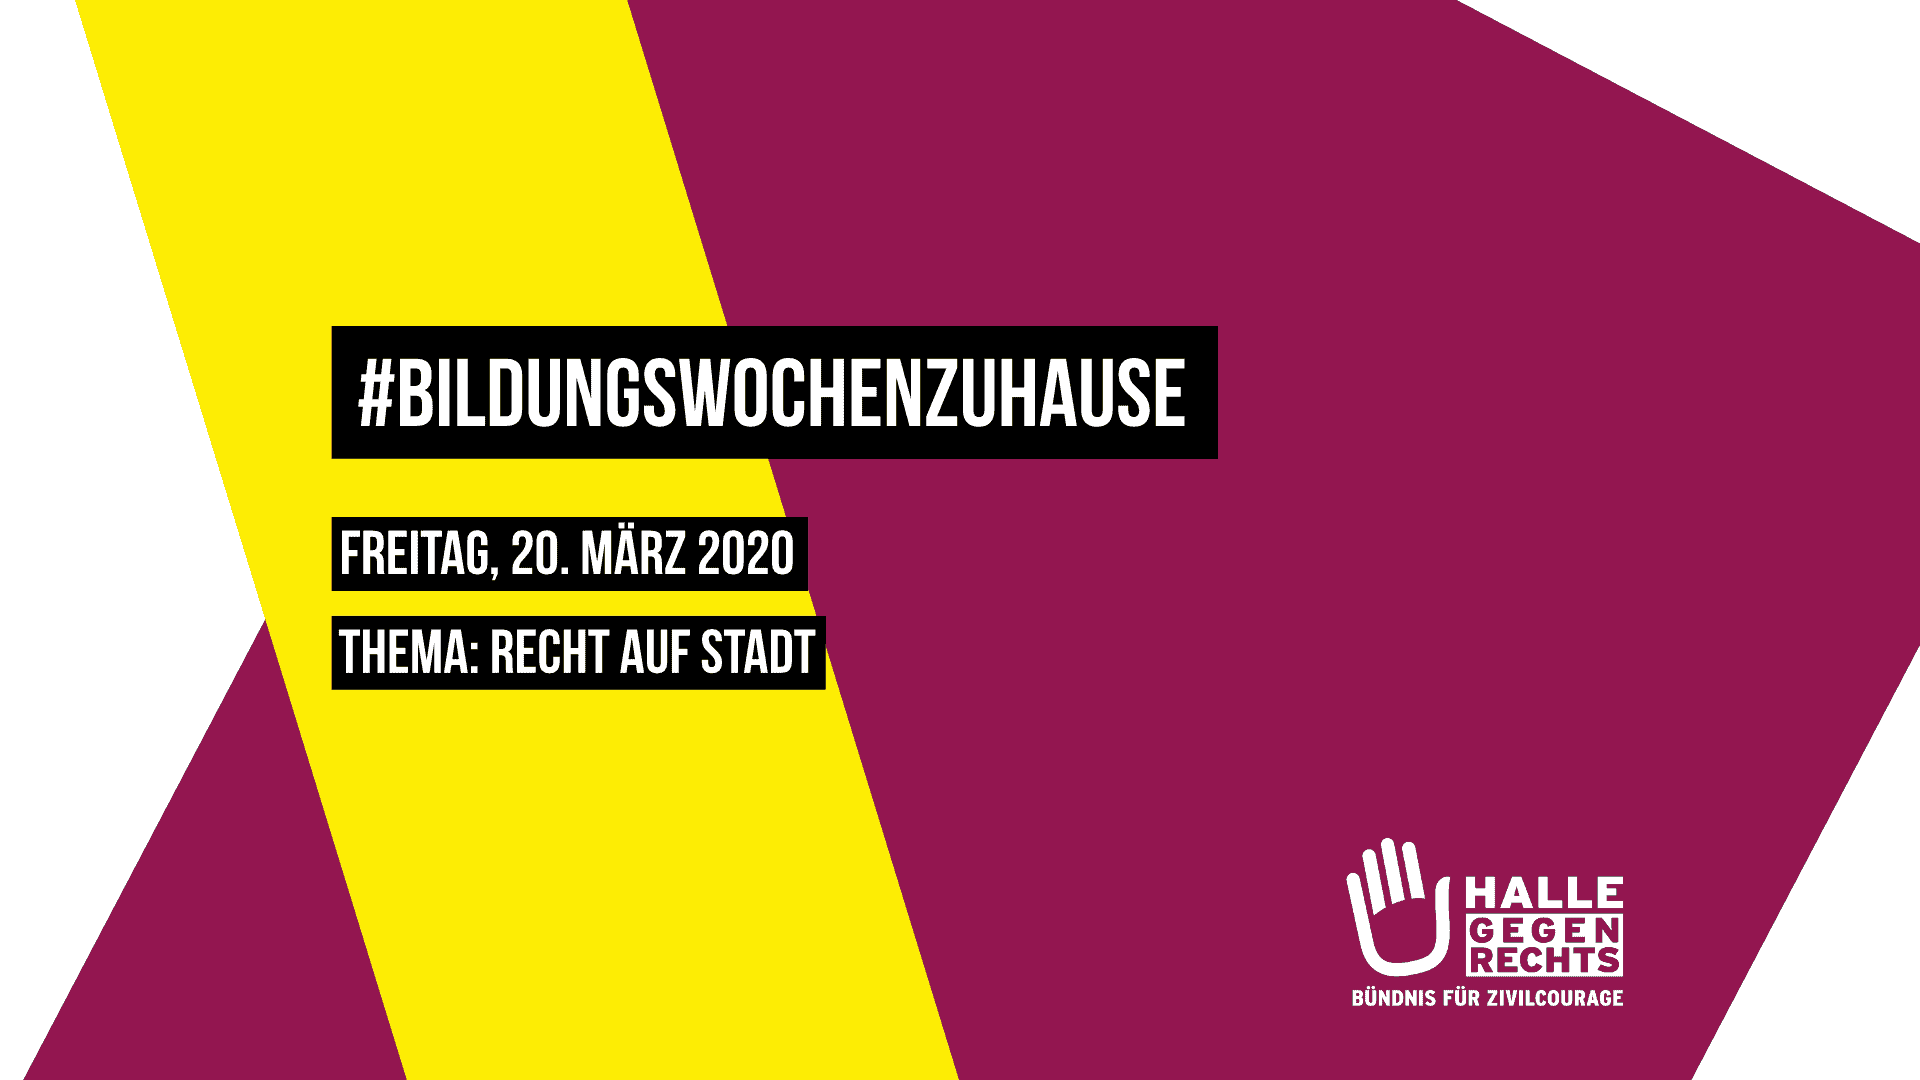 BildungswochenzuHause Montag, 20. März 2020 Thema: Recht auf Stadt, Logo von Halle gegen Rechts, Hintergrund beerenfarben und gelb